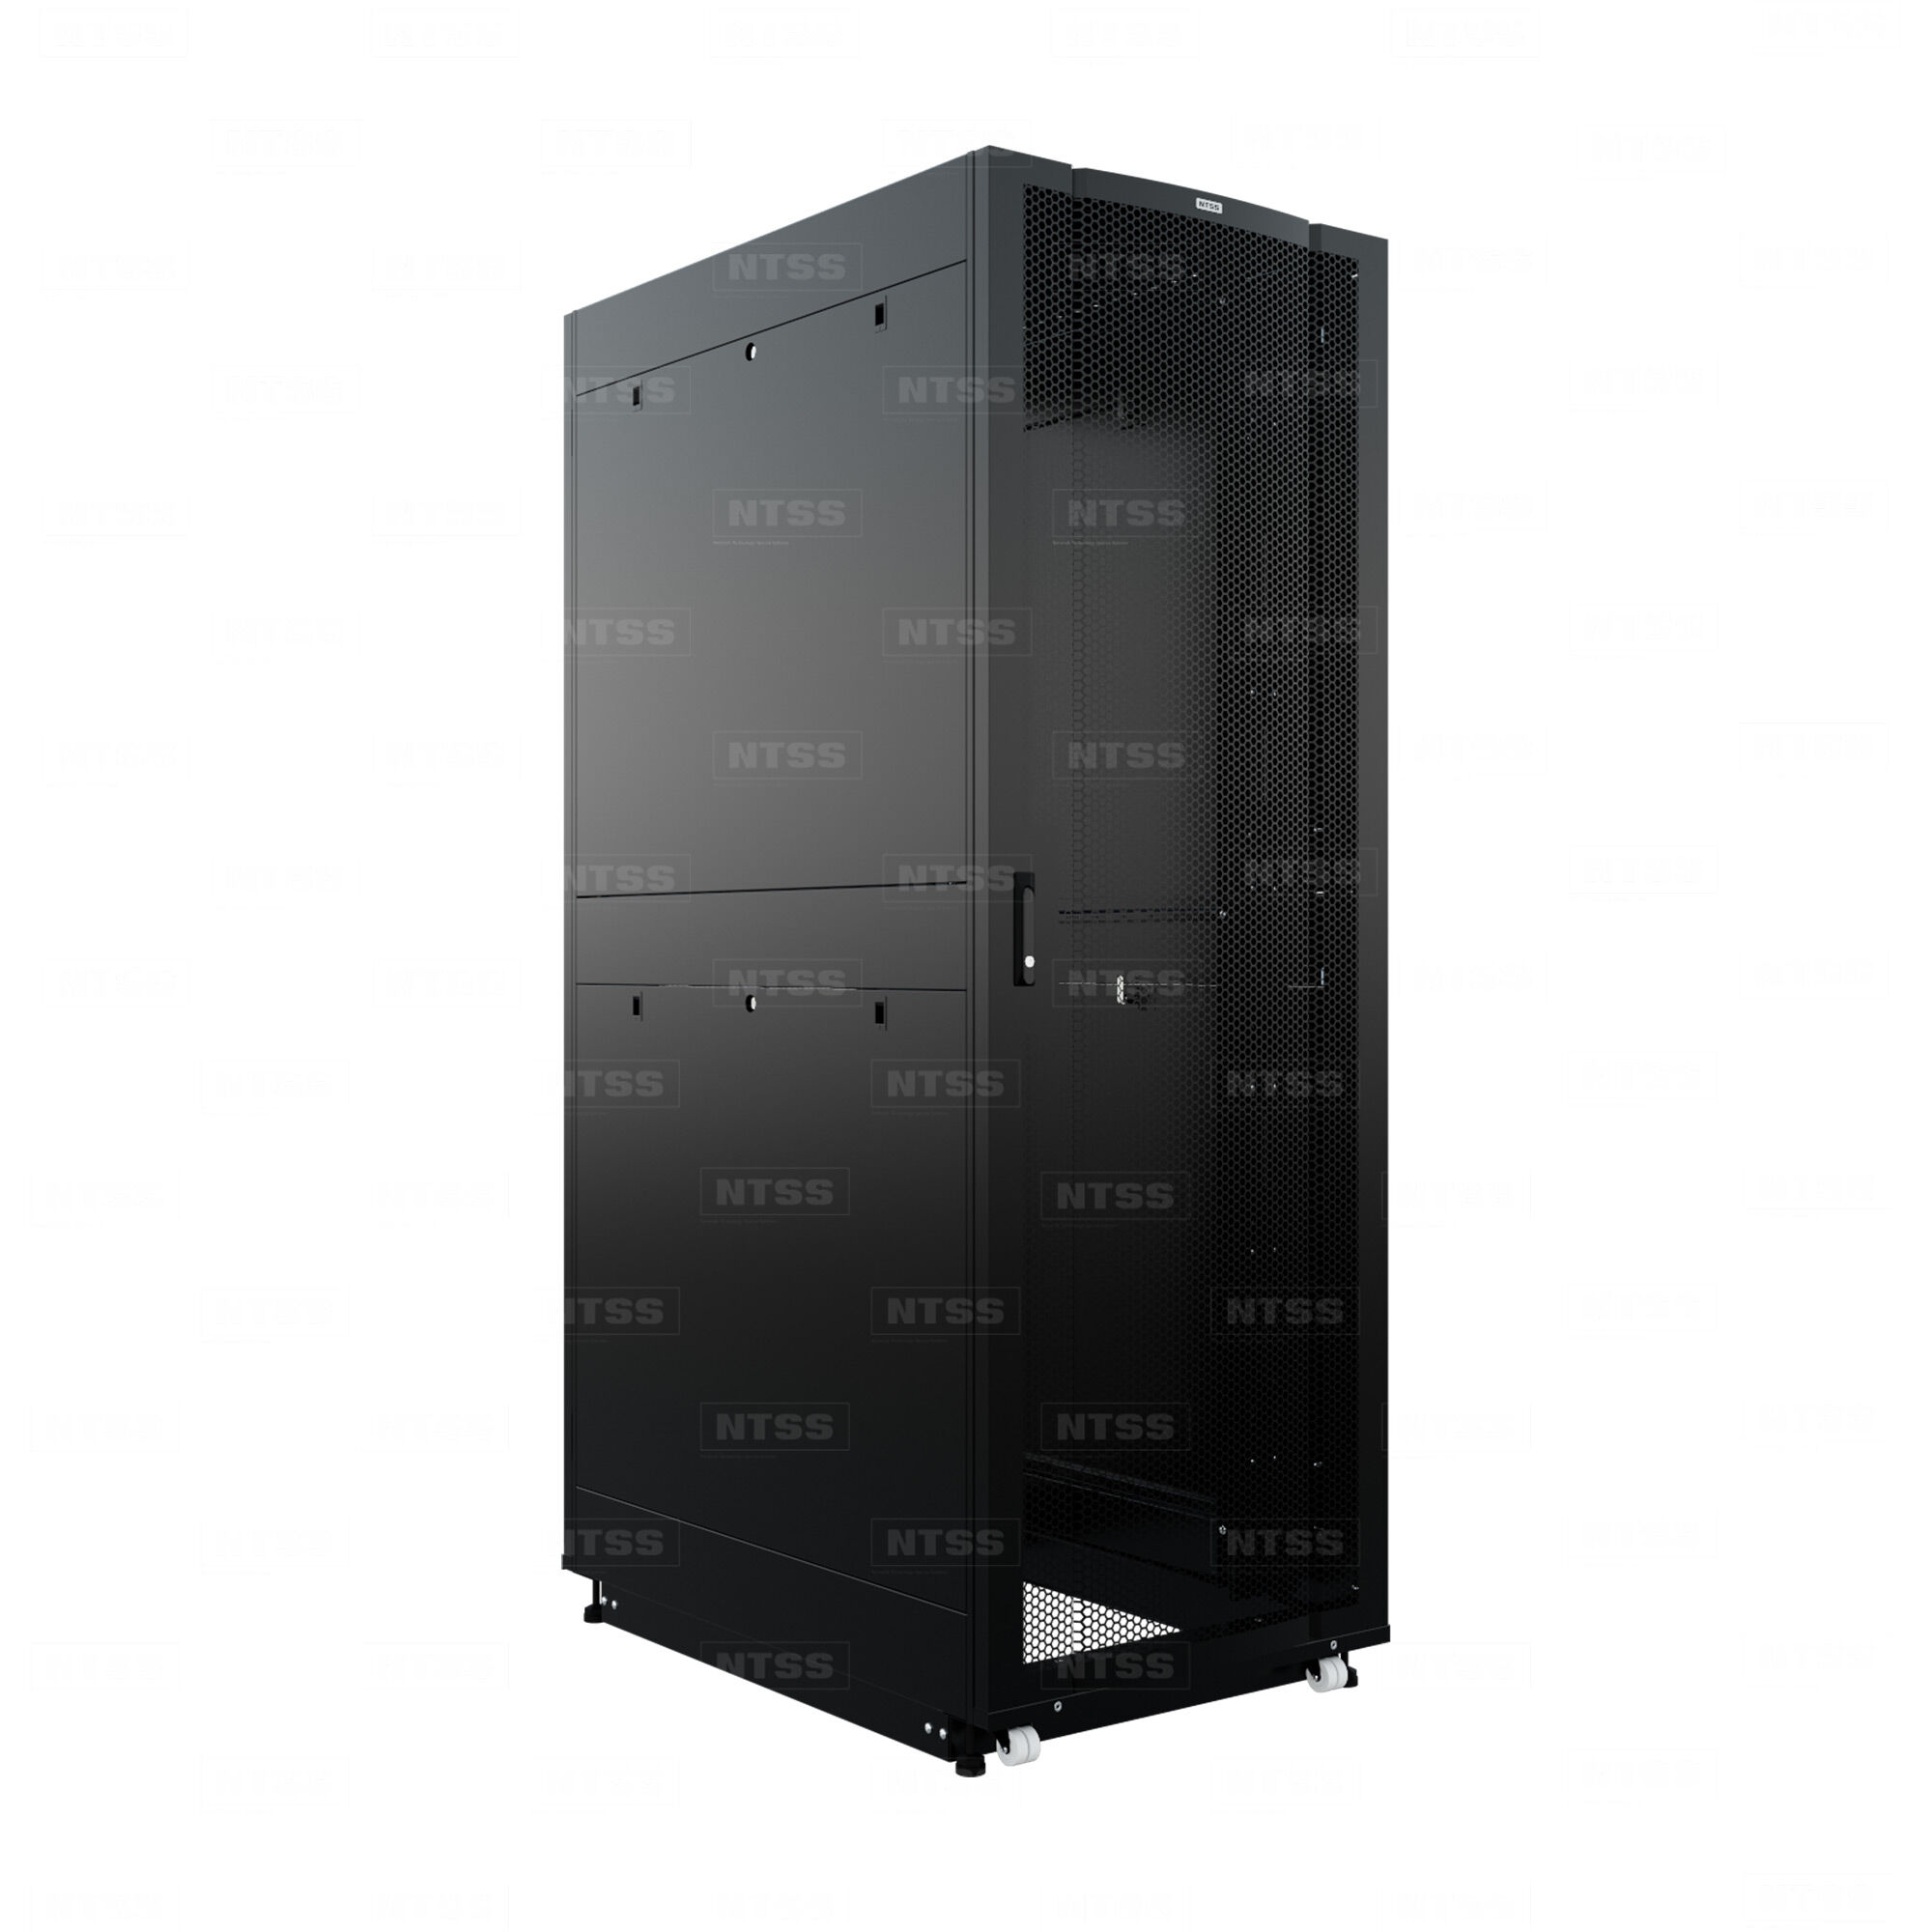 19" Напольный серверный шкаф NTSS ПРОЦОД PC 42U 800х1200 мм, передняя дверь перфорация, задняя дверь распашная двойная п